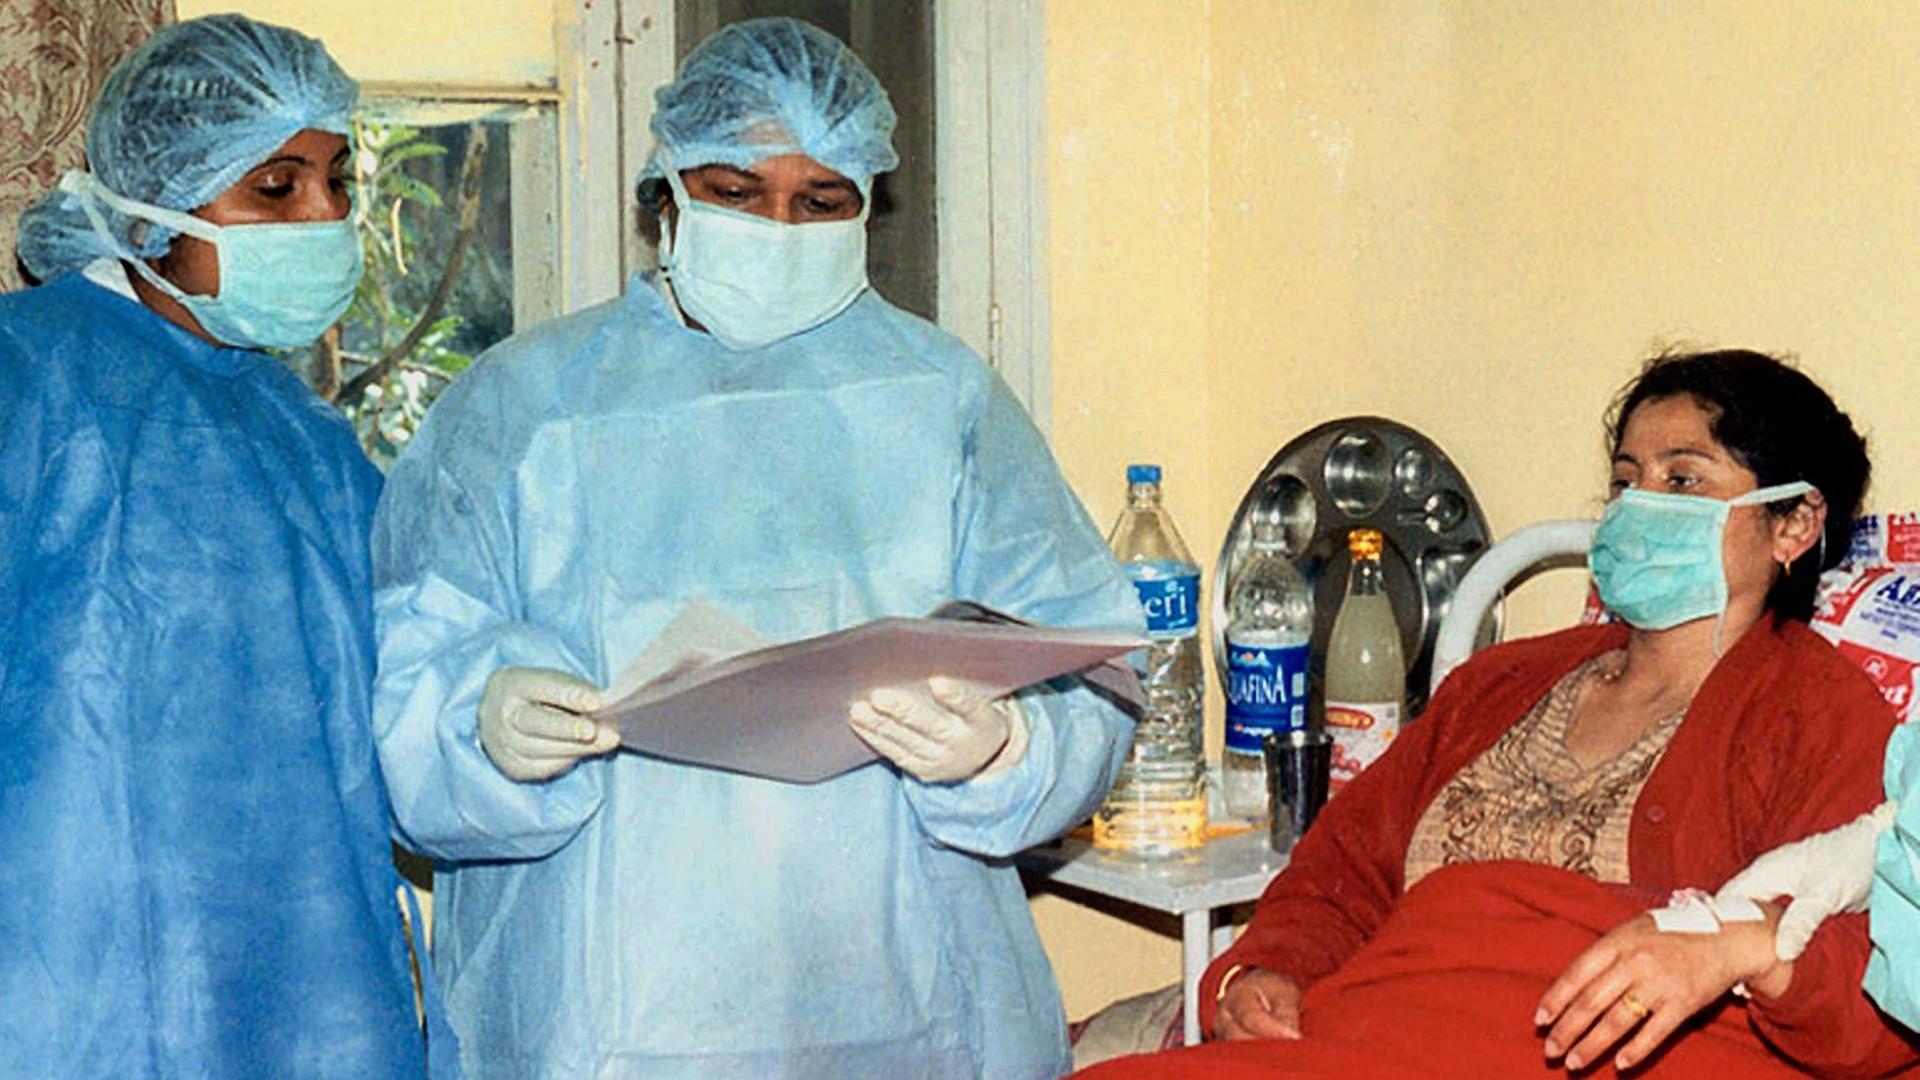 Eine Frau wird 2002 in Indien auf der Quarantänestation von Ärzten untersucht, nachdem sie mit Symptomen der Lungenpest eingeliefert worden war.